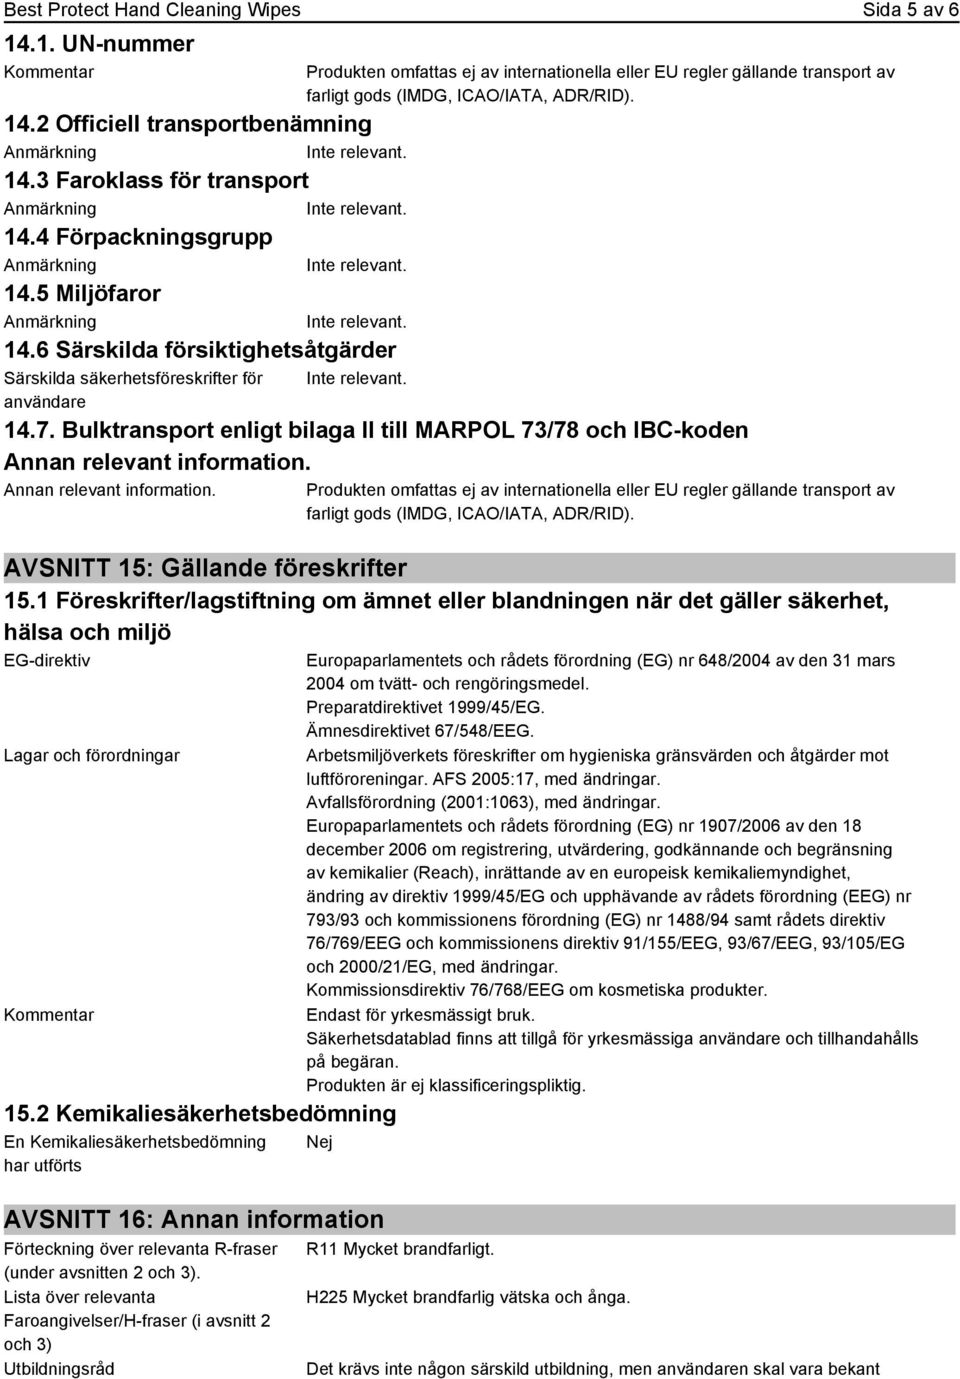 14.7. Bulktransport enligt bilaga II till MARPOL 73/78 och IBC-koden Annan relevant information.